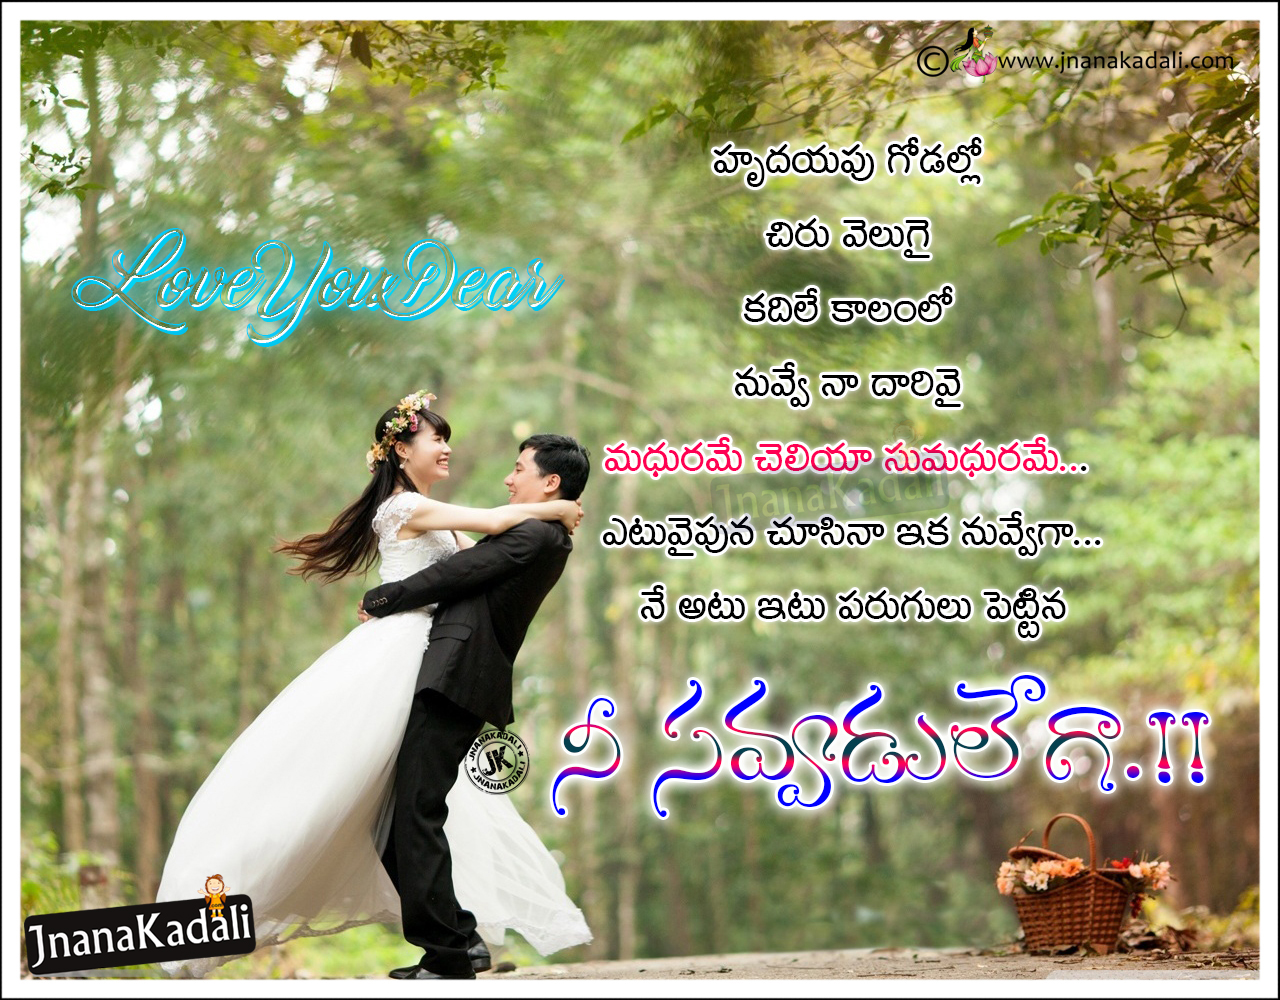 Telugu Love Quotations New Hd